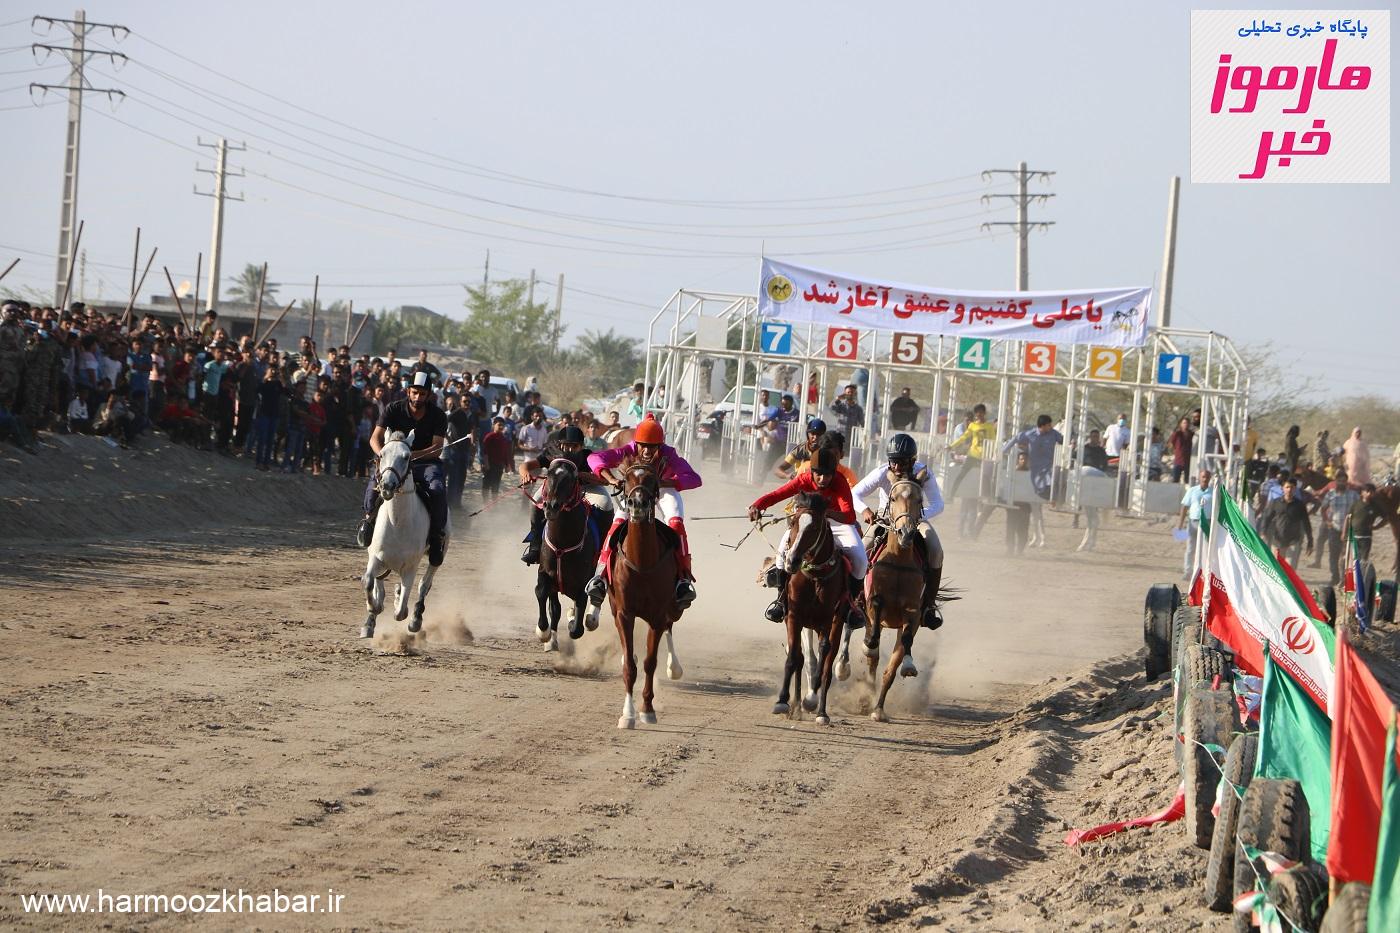 سومین دوره مسابقه کورس اسب دوانی جنوب کشور در میناب برگزارشد